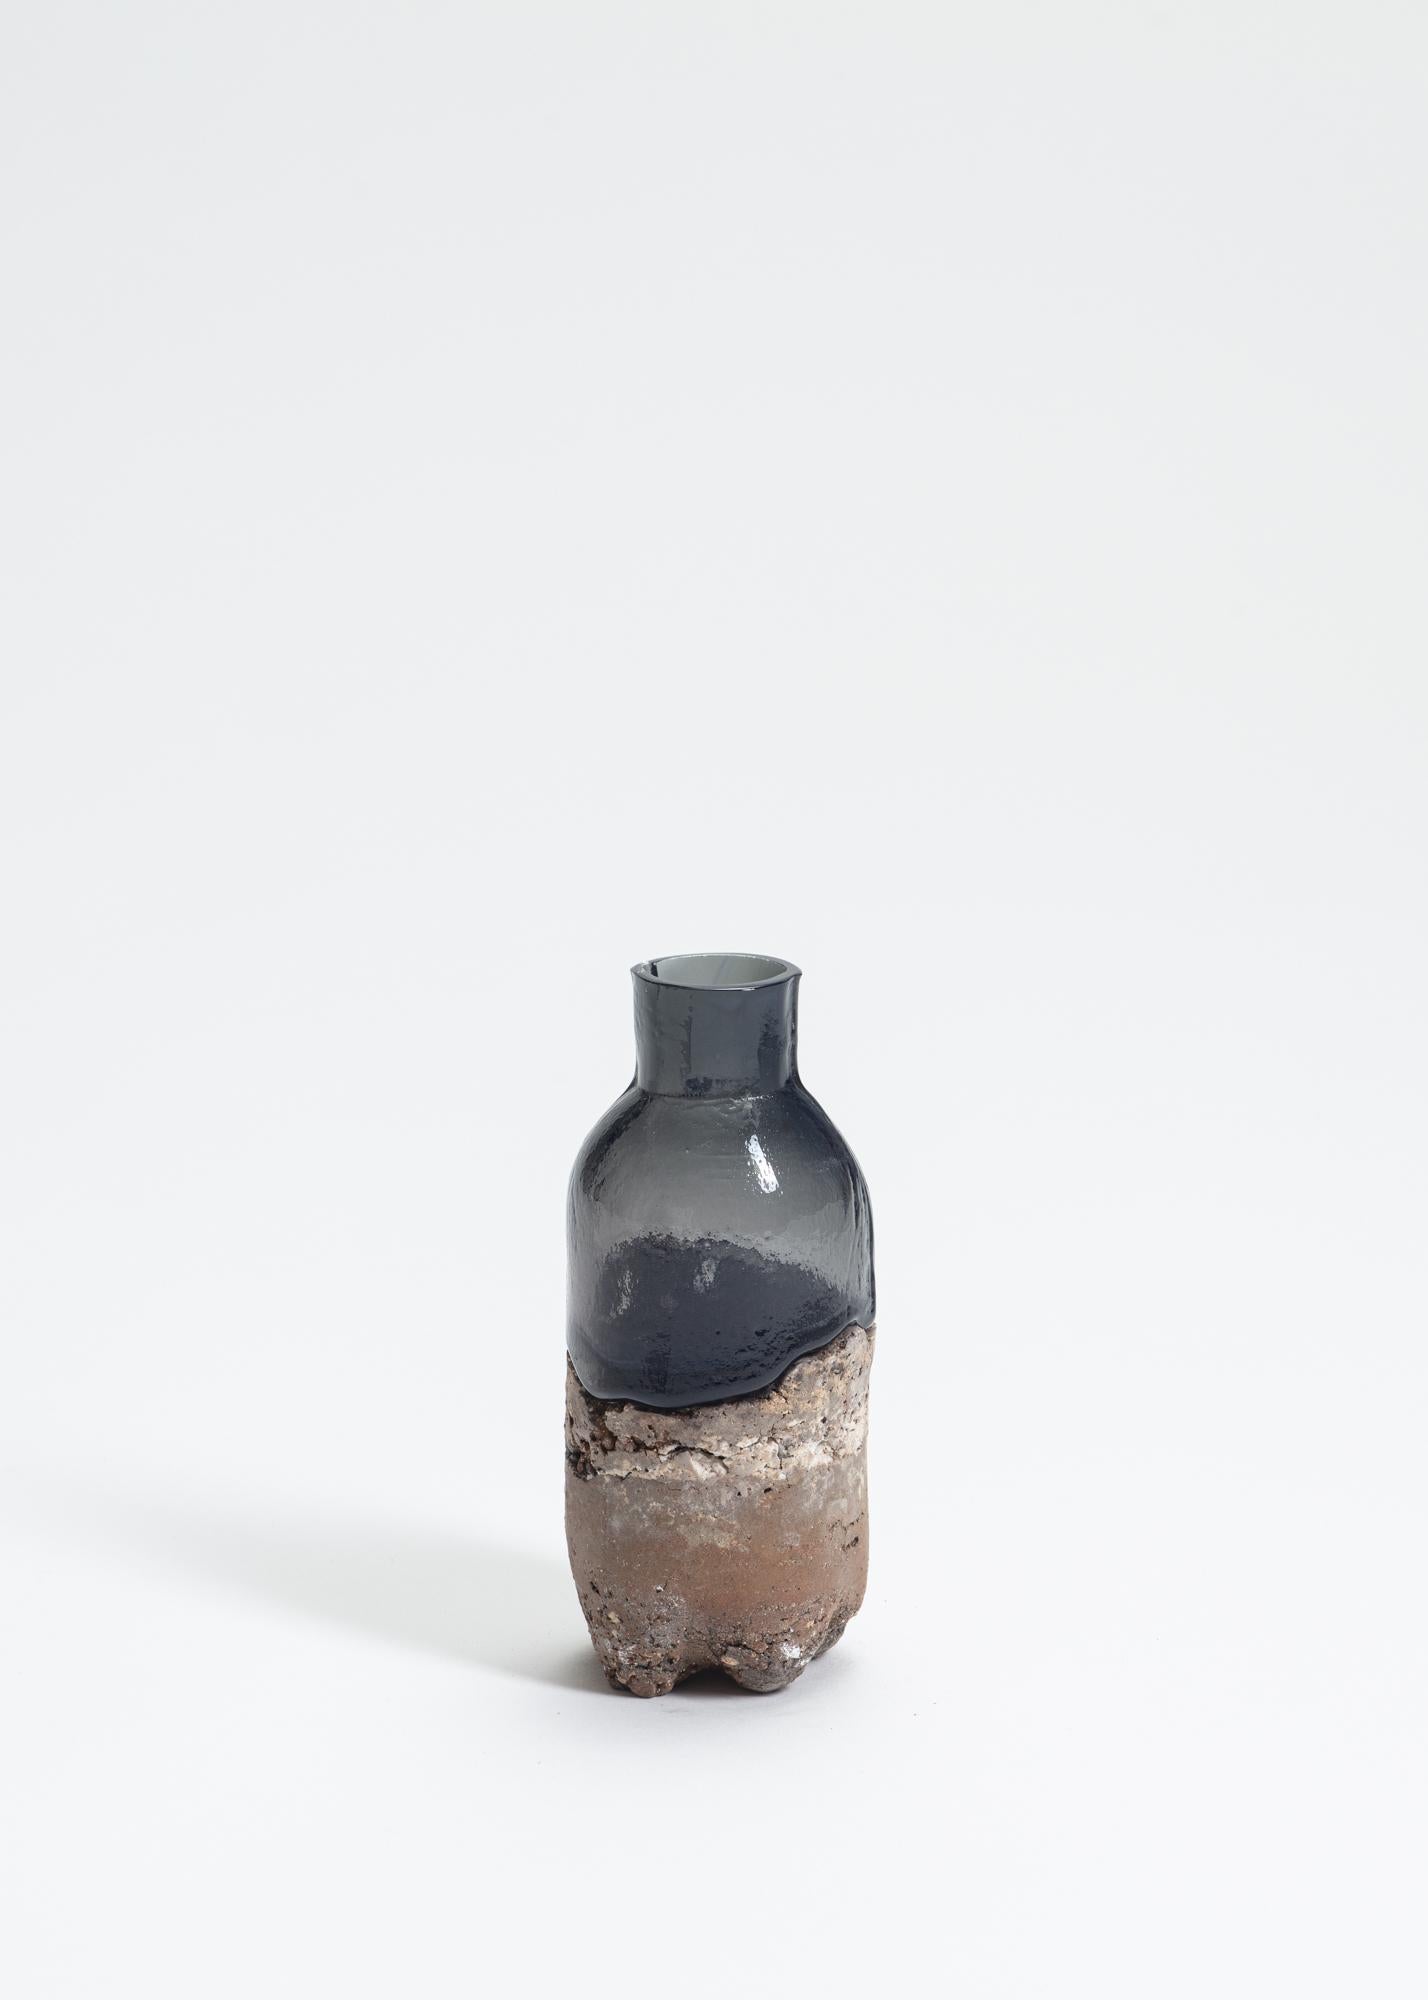 FUWA FUWA, Nr. 11 Flasche von Yusuke' Y. Offhause
Das Werk ist ein Unikat und besteht aus zwei Teilen (Keramik und Glas).
Abmessungen: D 6 x B 6 x H 14 cm.
MATERIALIEN: Steingut, Porzellan, Glas.

Yusuke' Y. Offhause:
